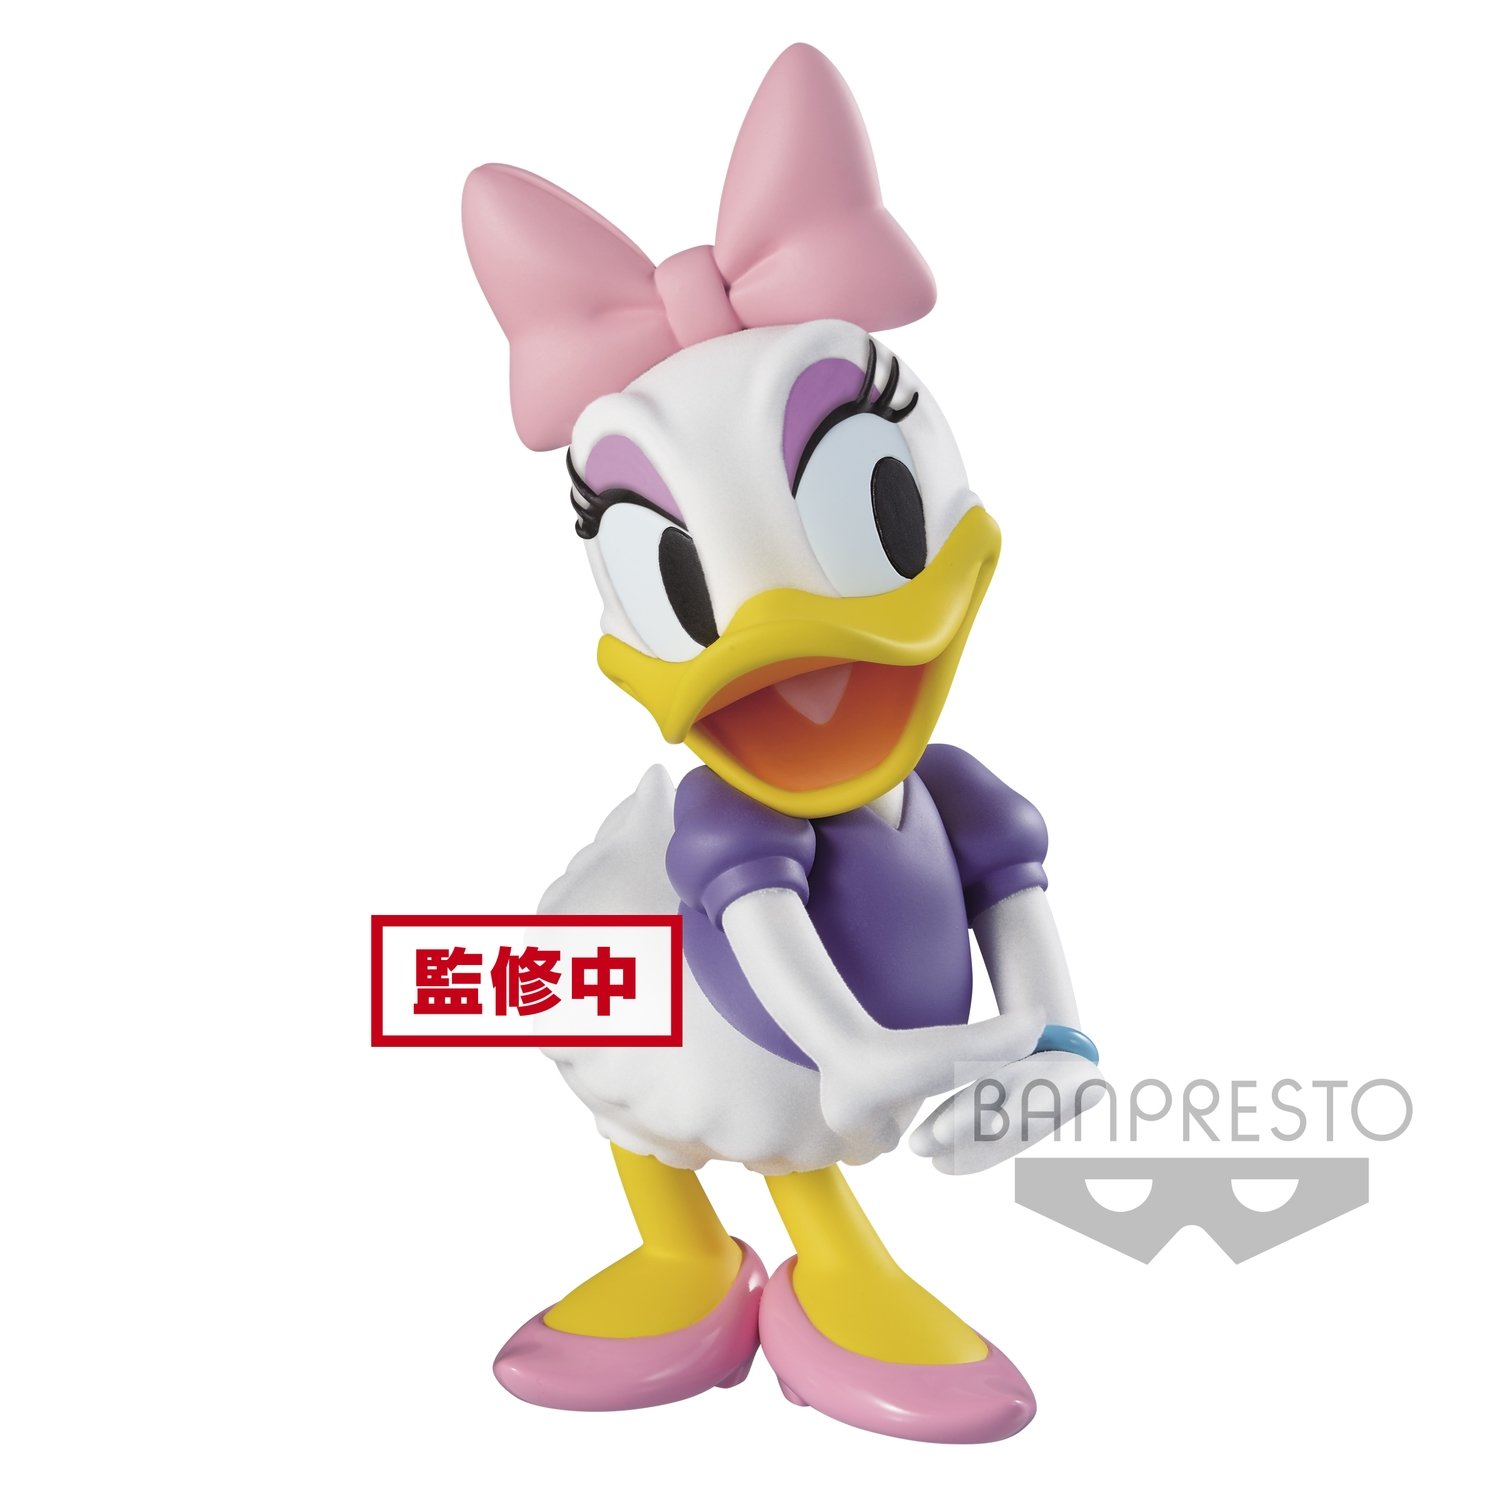 Banpresto Disney Characters Fluffypuffy Daisy